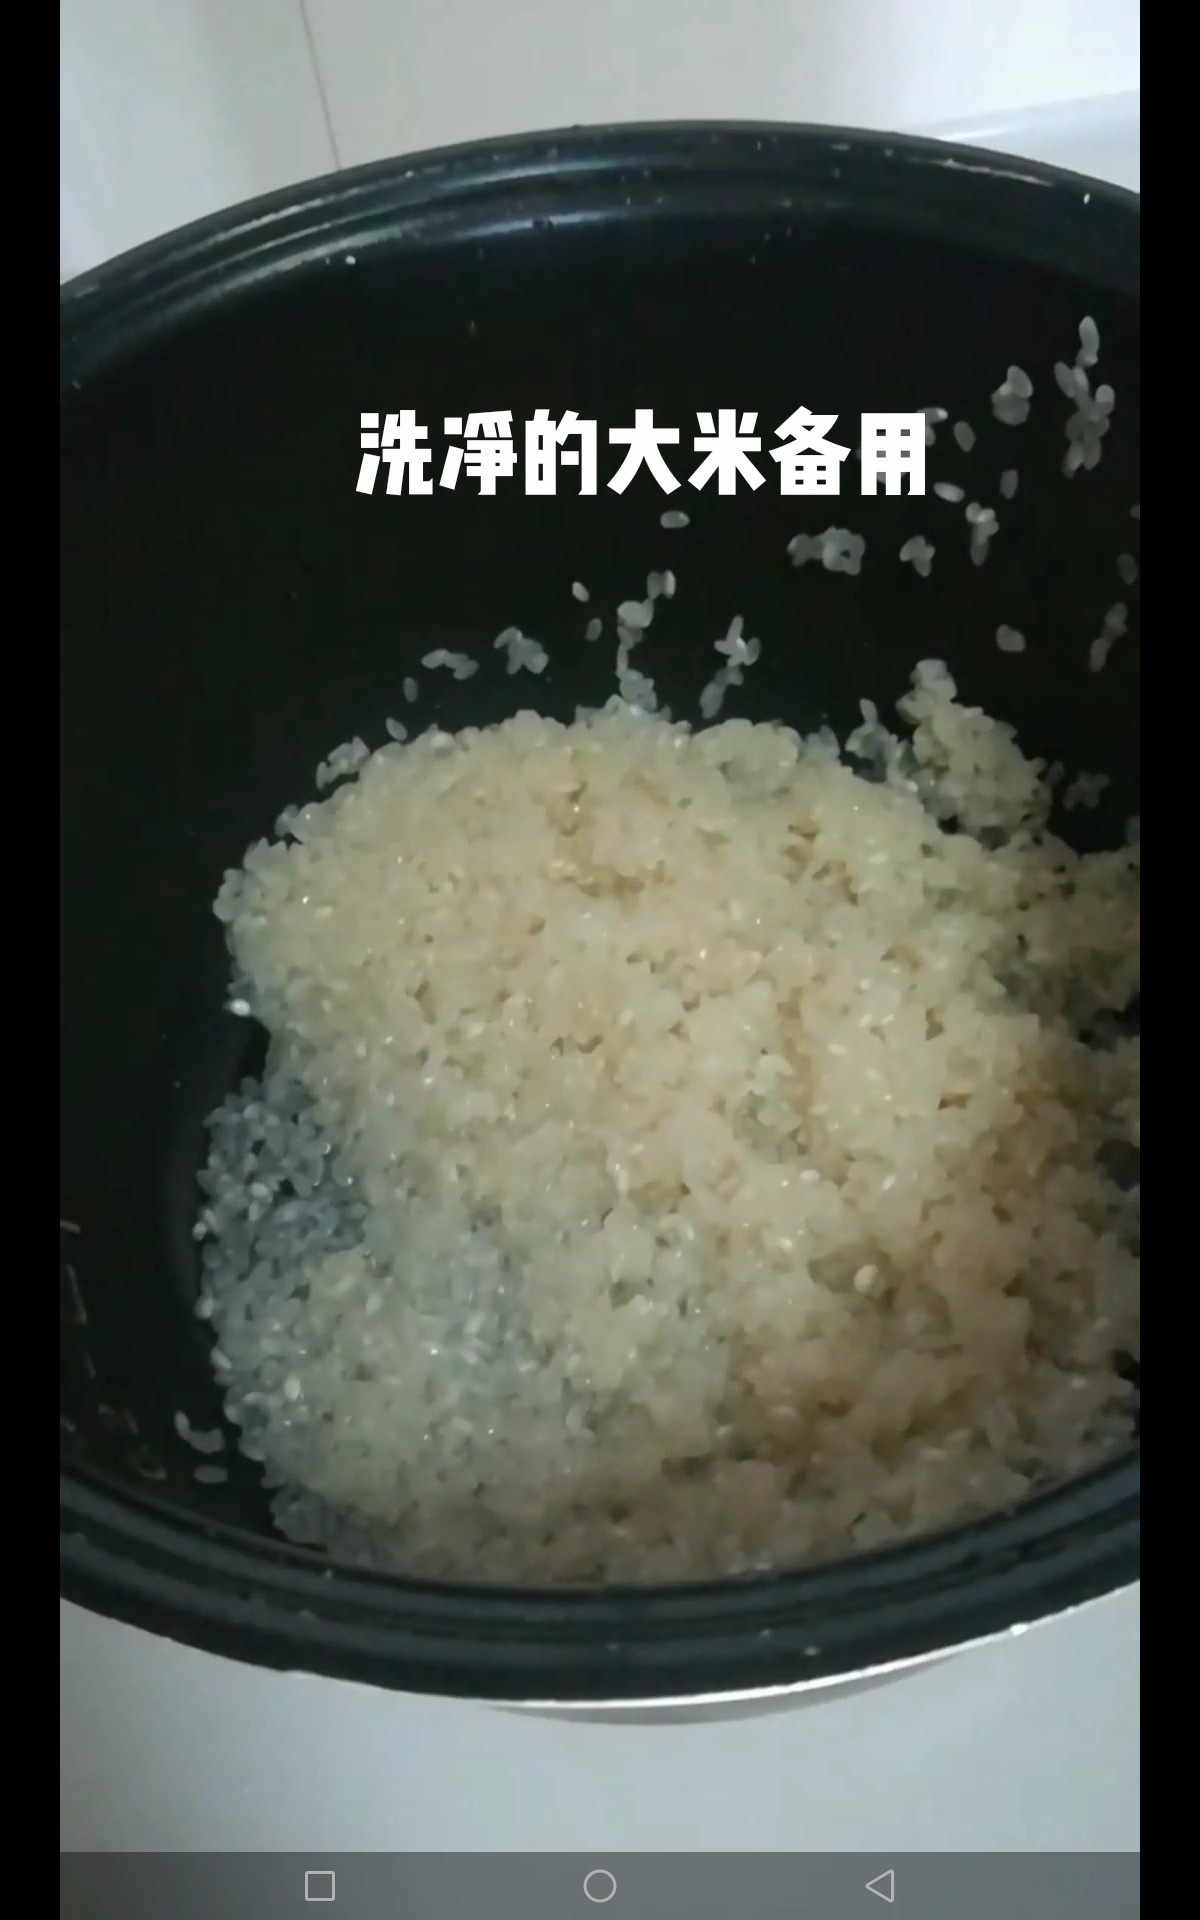 Braised Rice with Potato Sauce recipe